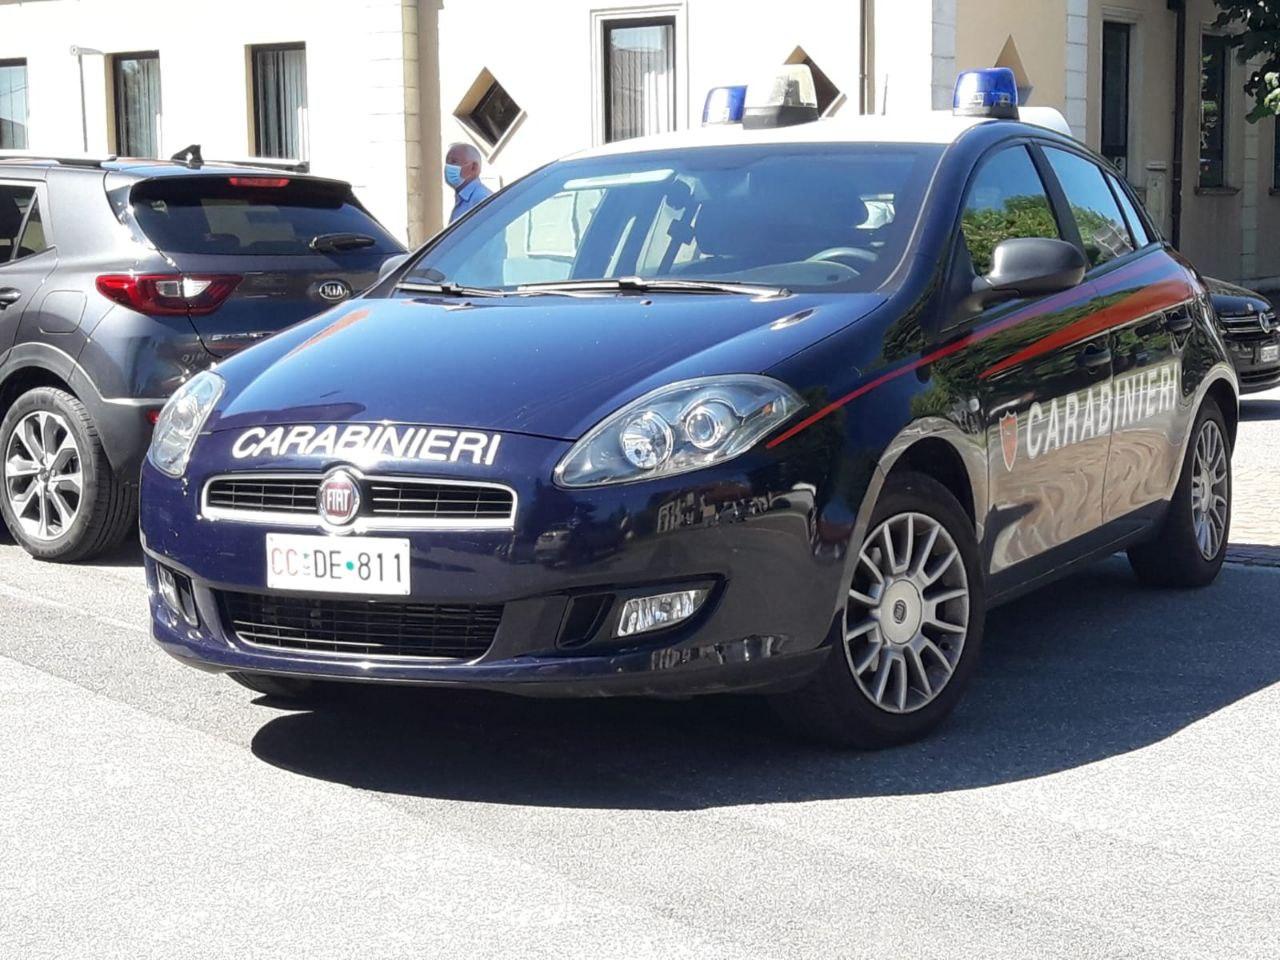 Limbiate: carabinieri arrestano 37enne per maltrattamenti in famiglia